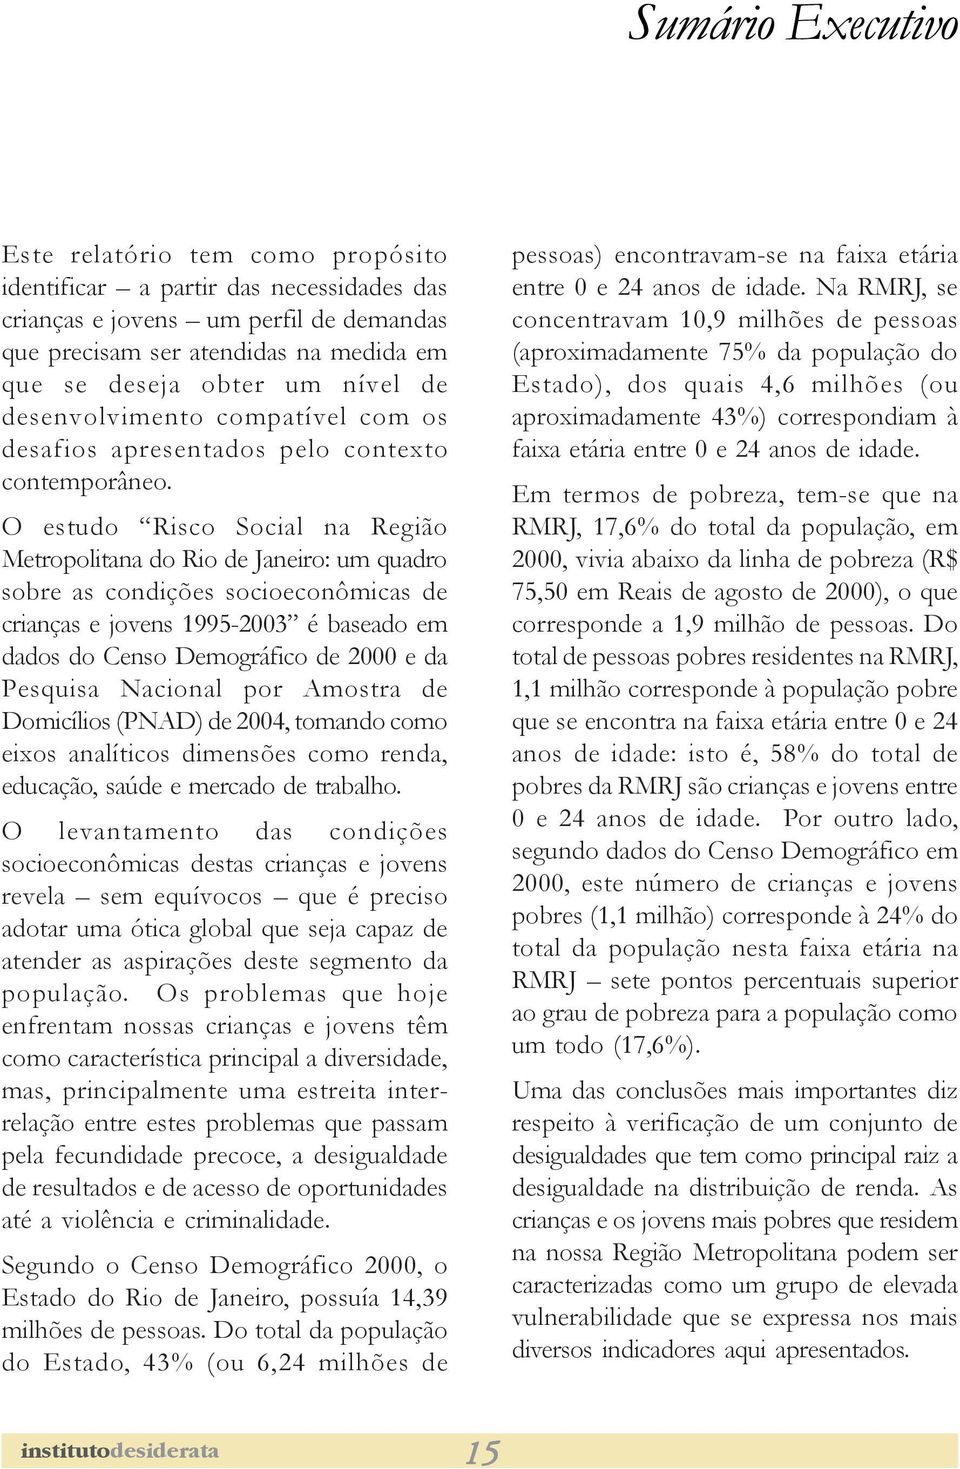 O estudo Risco Social na Região Metropolitana do Rio de Janeiro: um quadro sobre as condições socioeconômicas de crianças e jovens 1995-2003 é baseado em dados do Censo Demográfico de 2000 e da